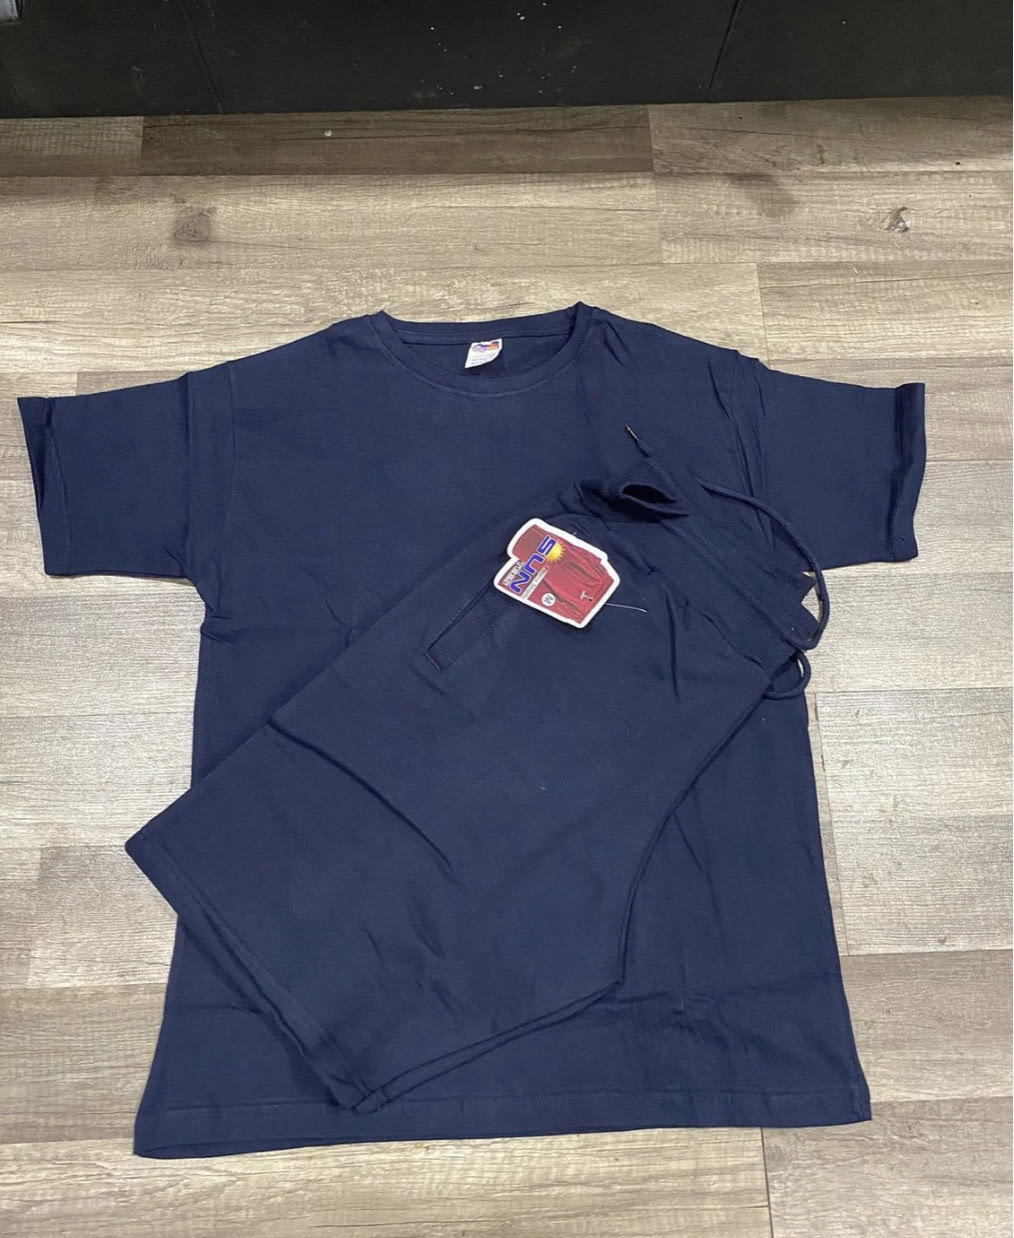 Navyblue t-shirt and short sets